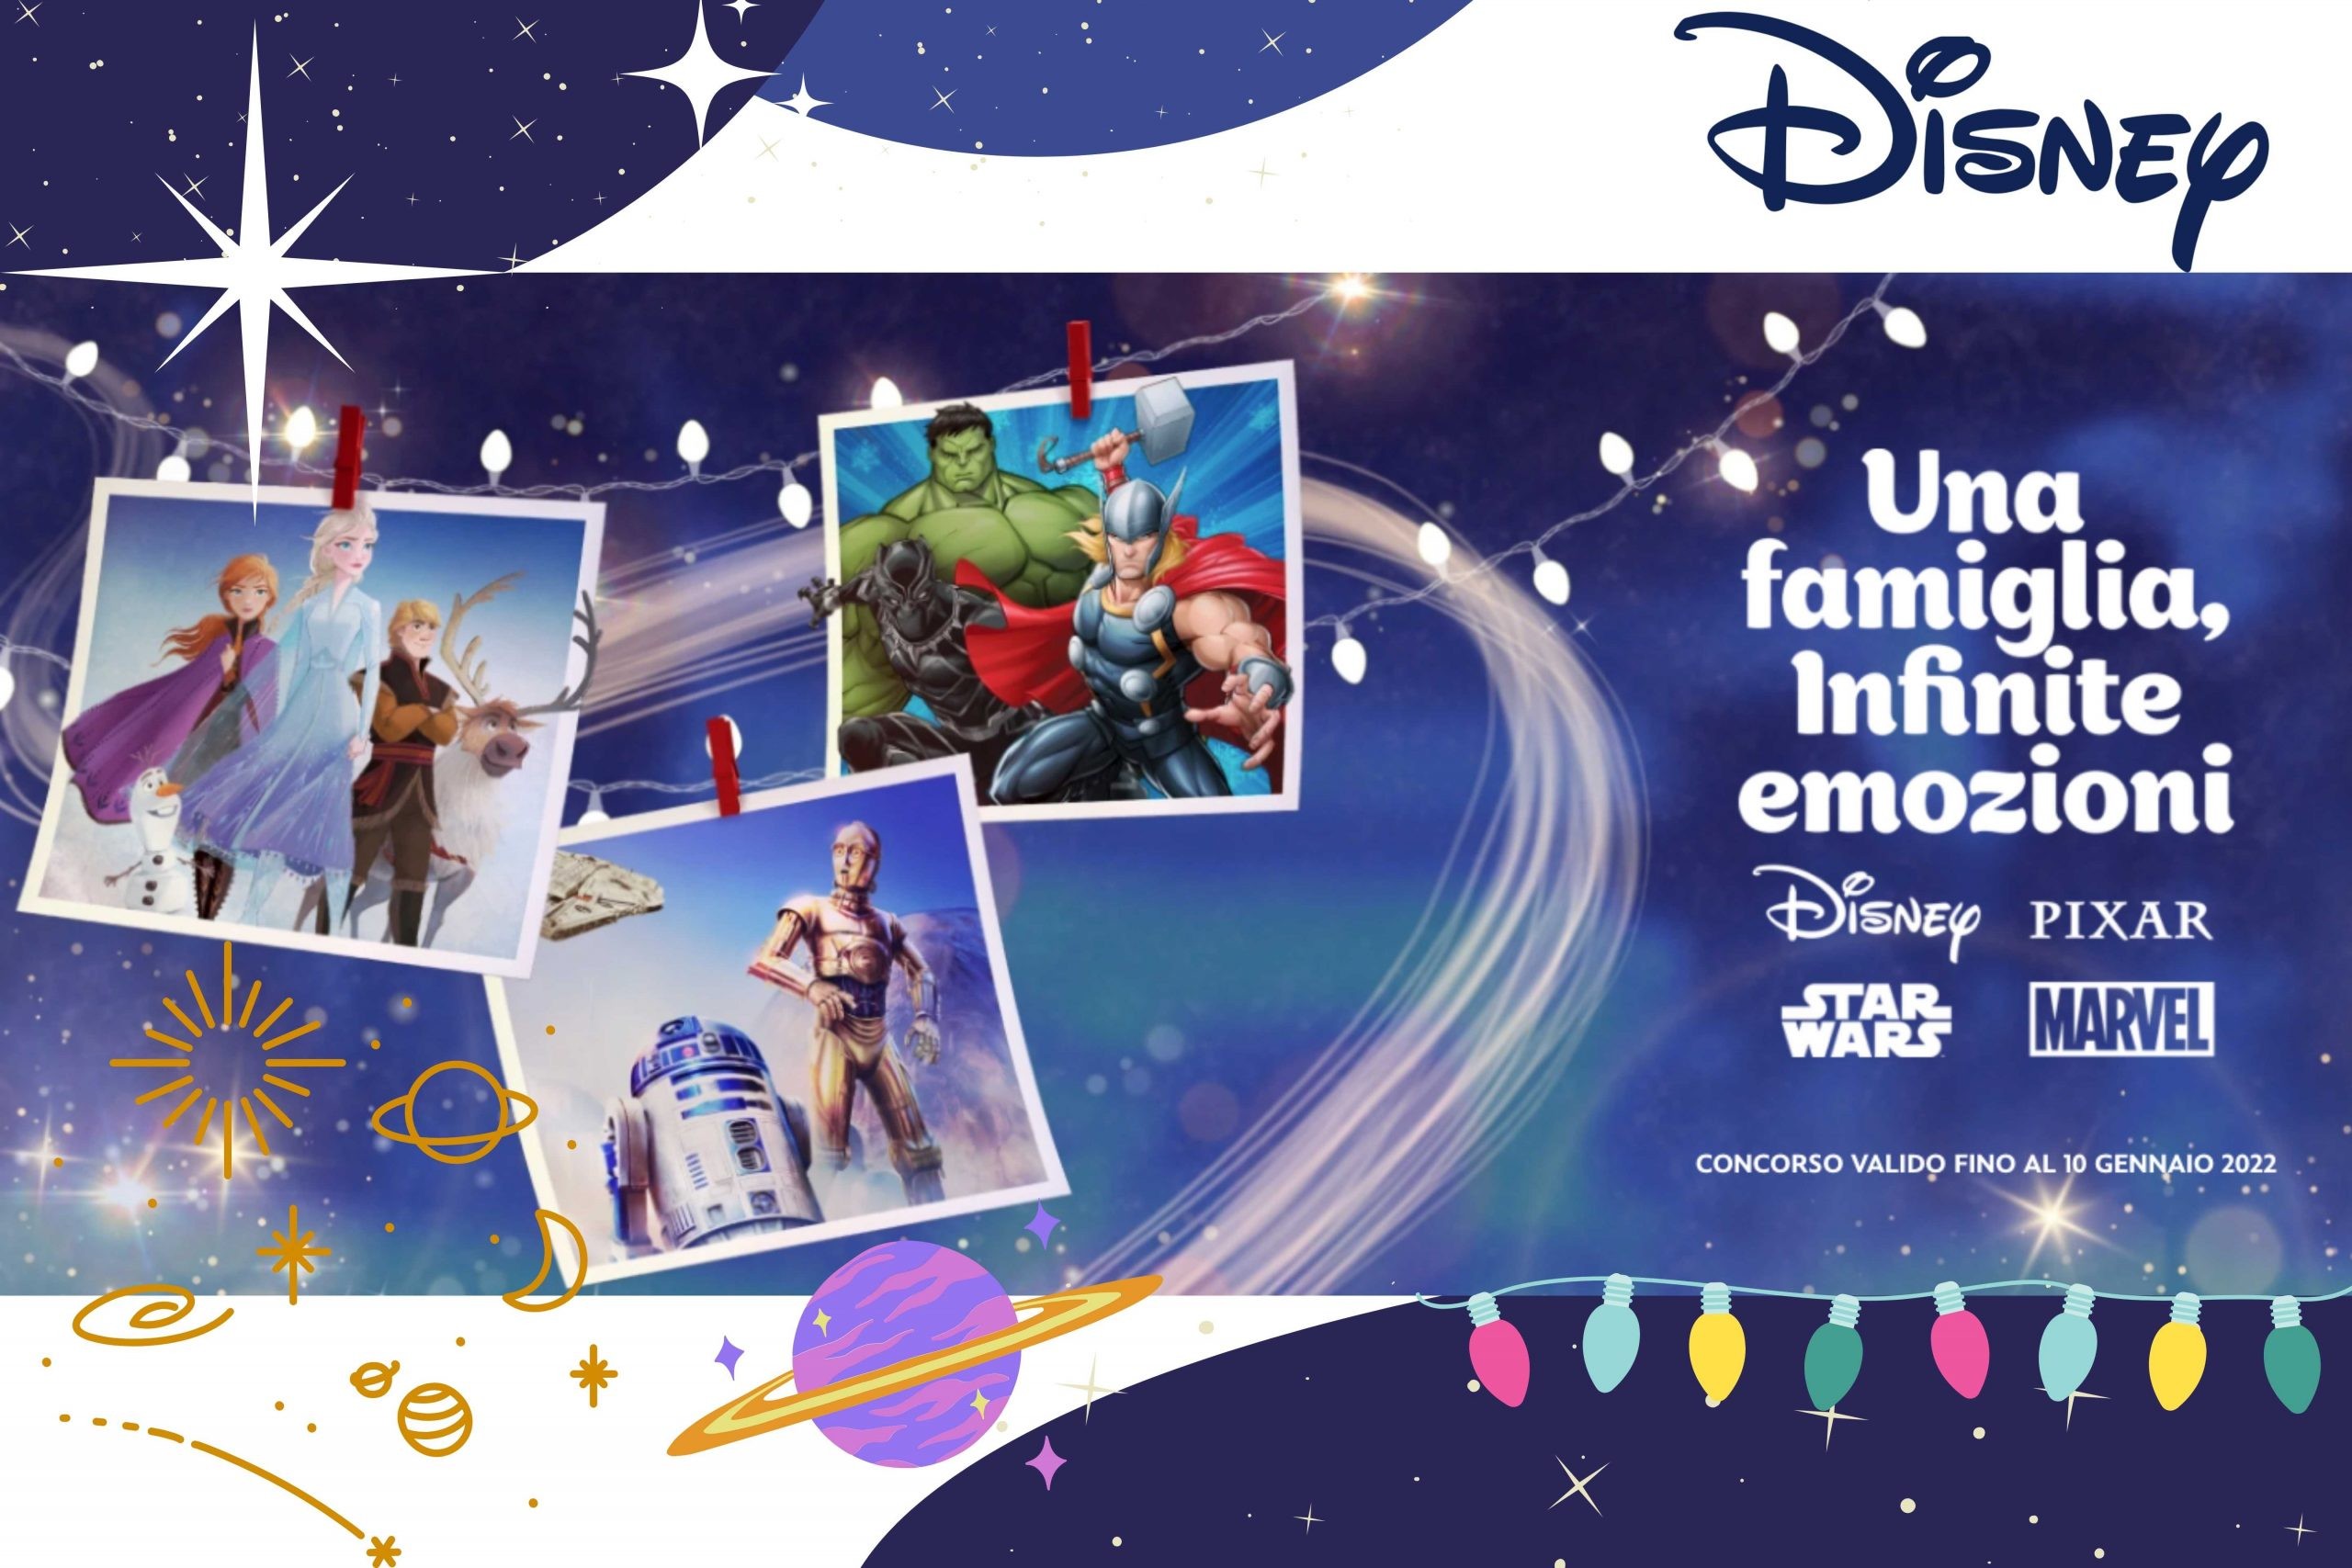 Concorso Disney “Una famiglia, infinite emozioni”: come vincere tantissimi premi come un viaggio a Disneyland Paris